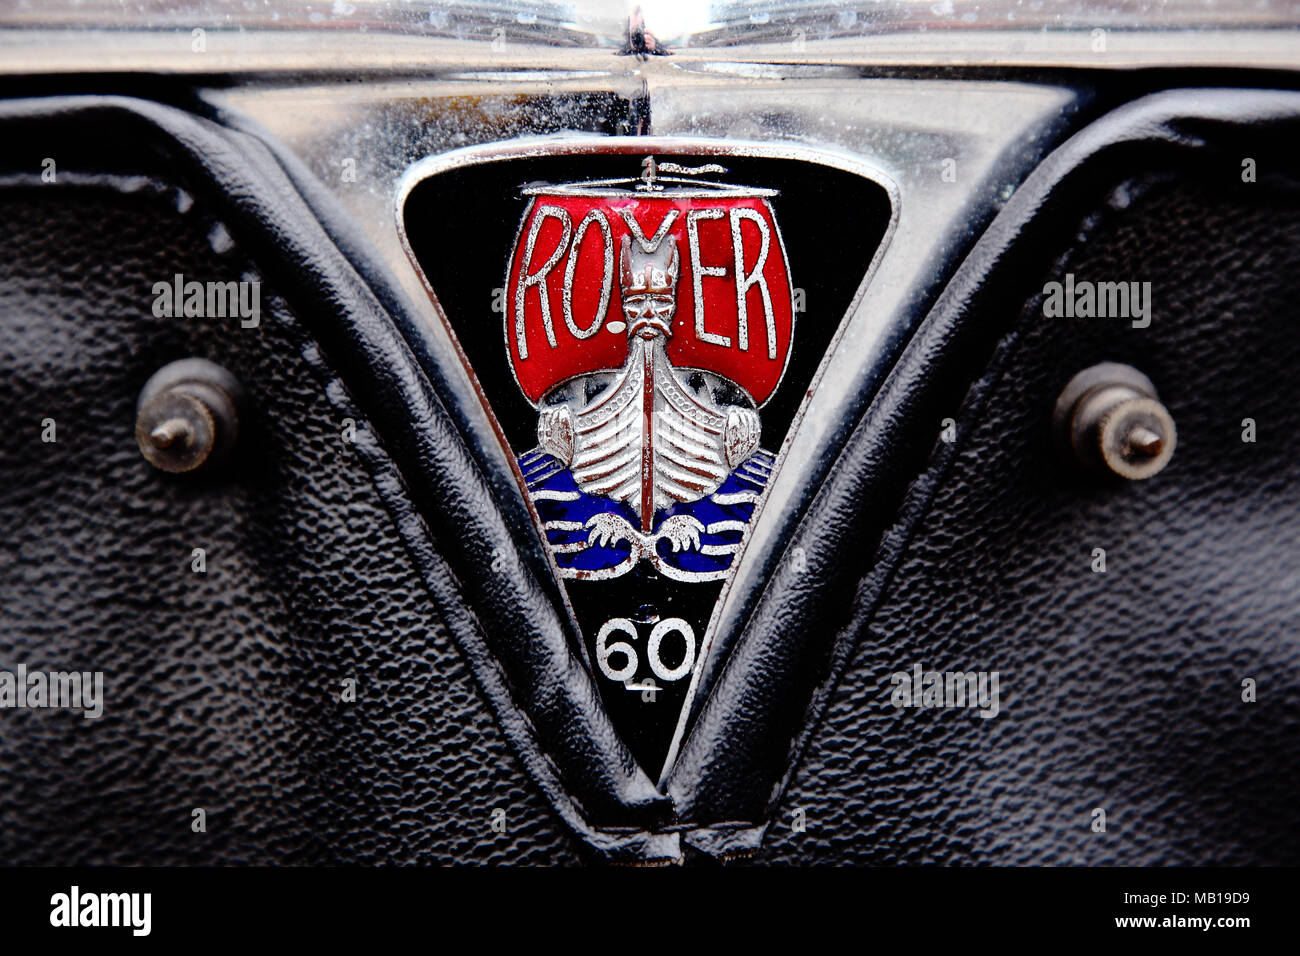 Vintage Rover el logotipo de marca de barco vikingo en un Rover 60 ornamento. Foto de stock